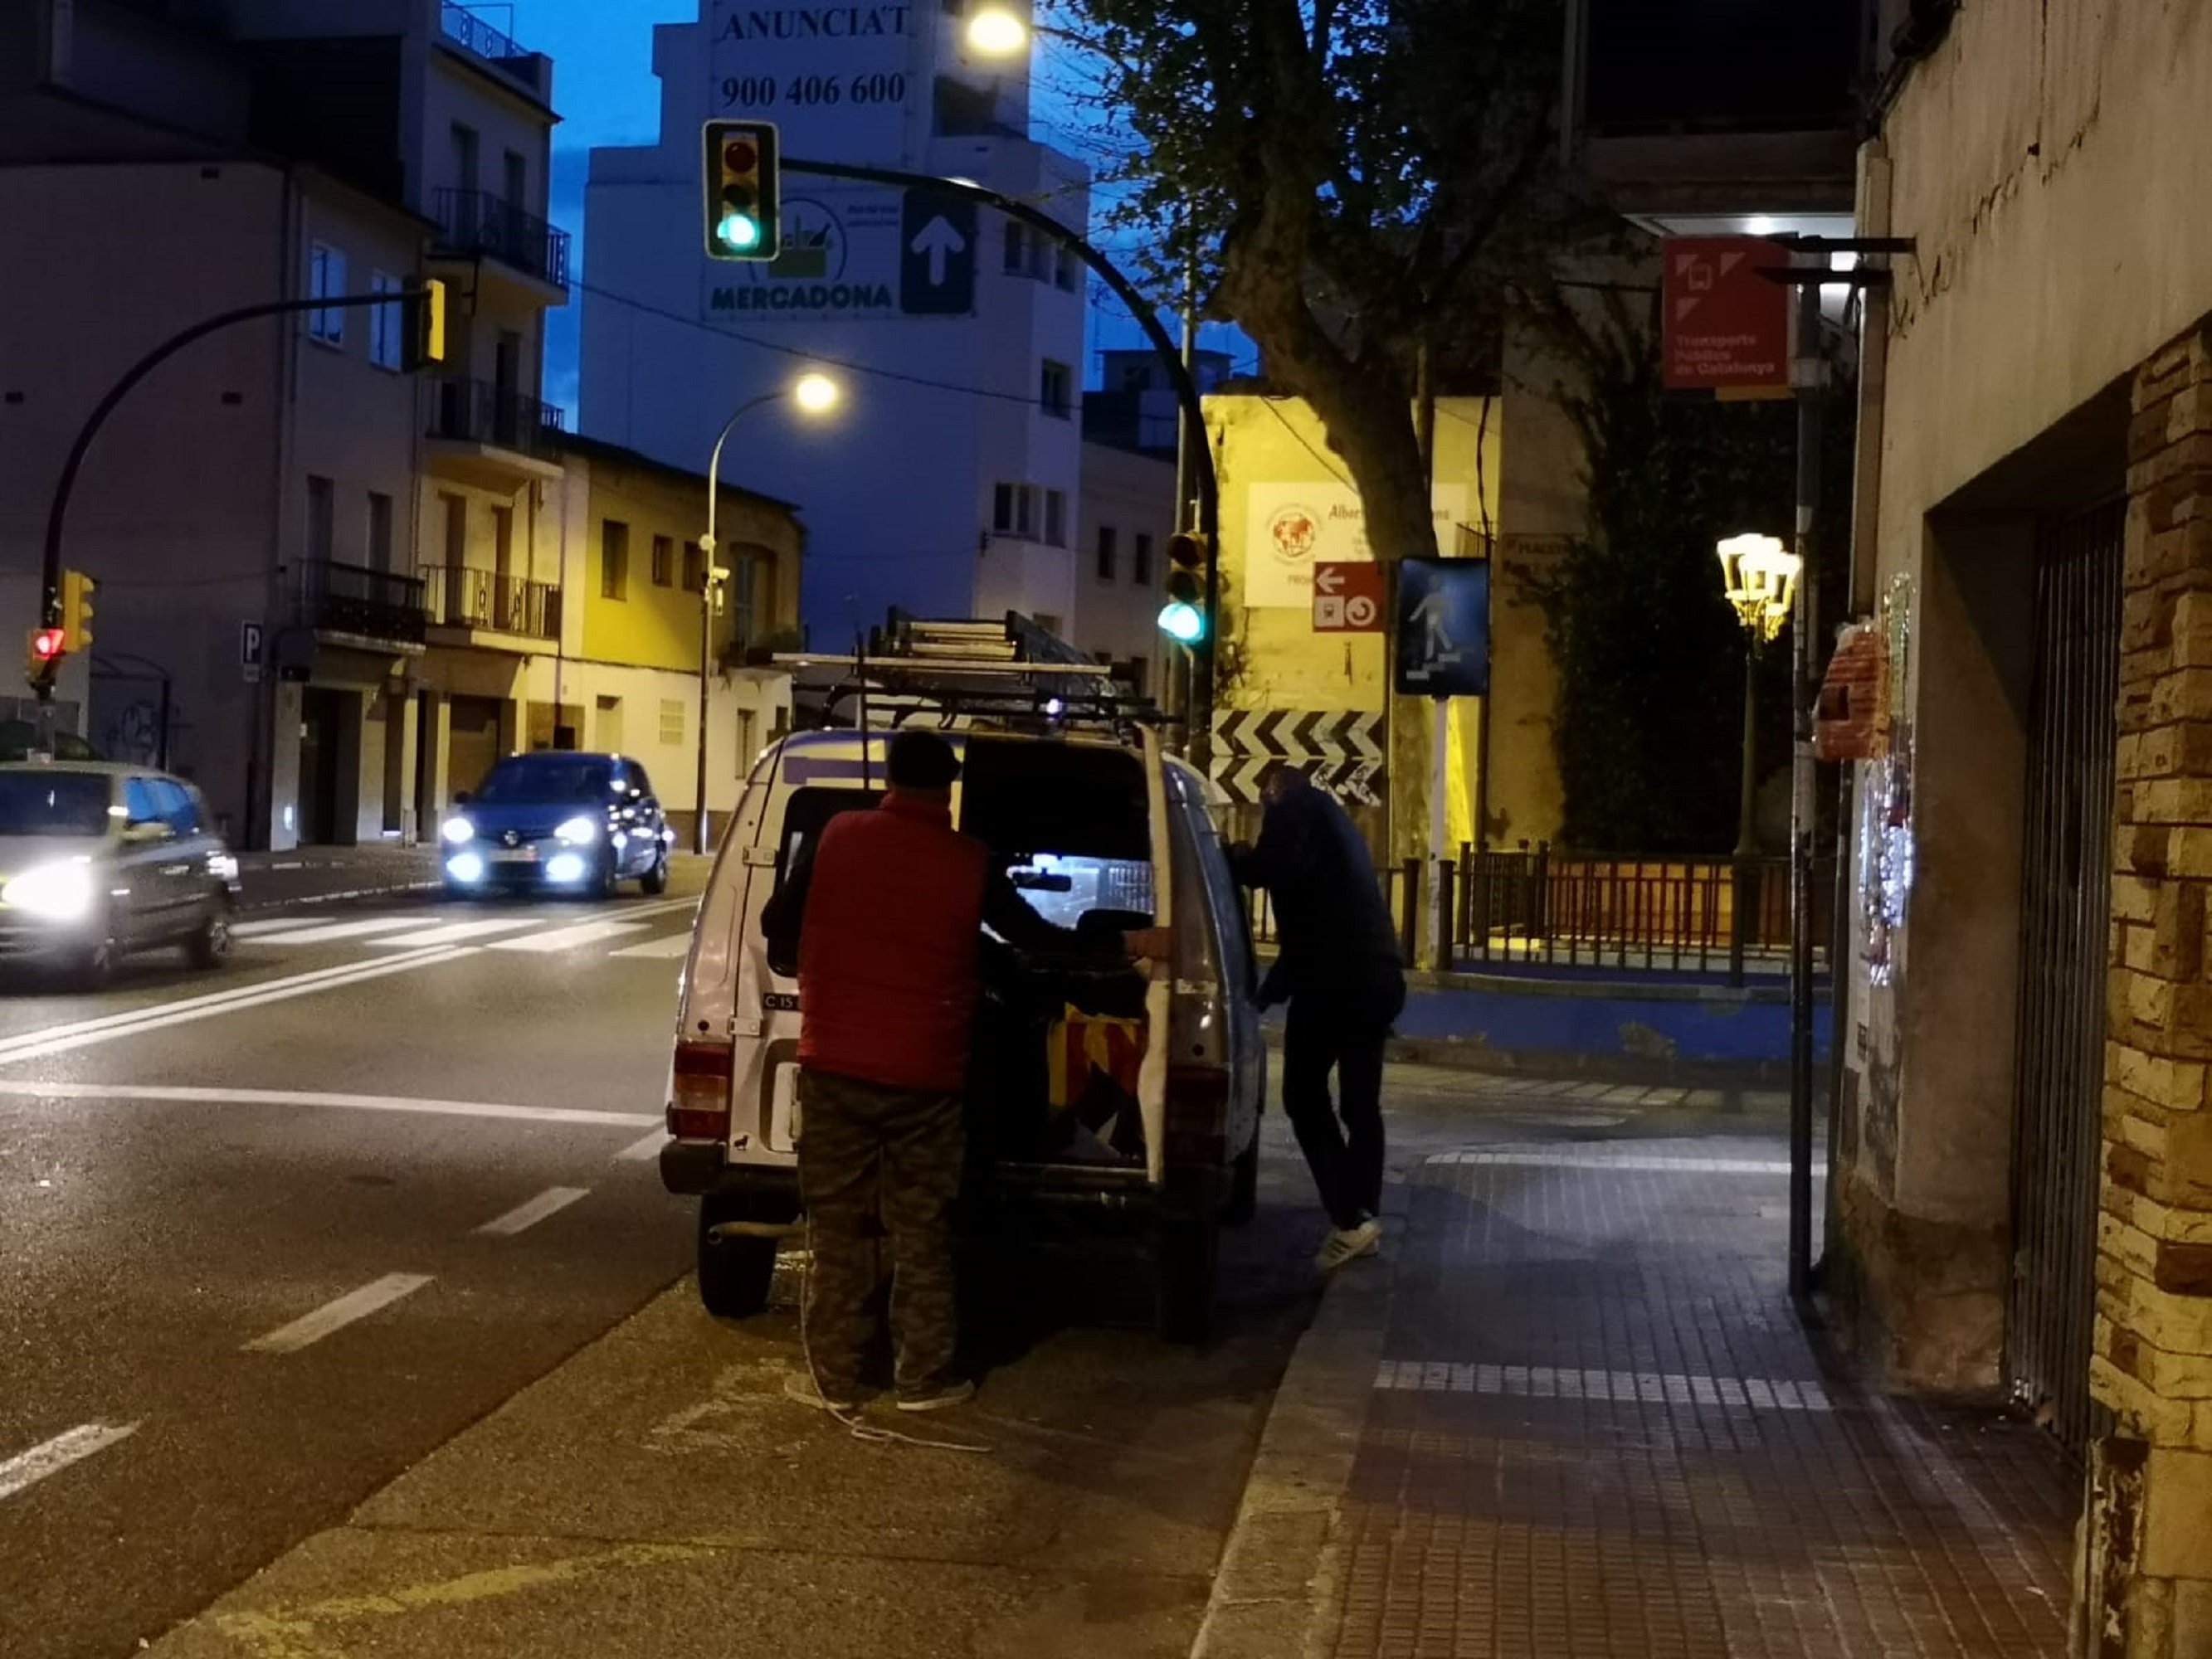 VÍDEO | Arrancan una pancarta electoral de ERC en Canet